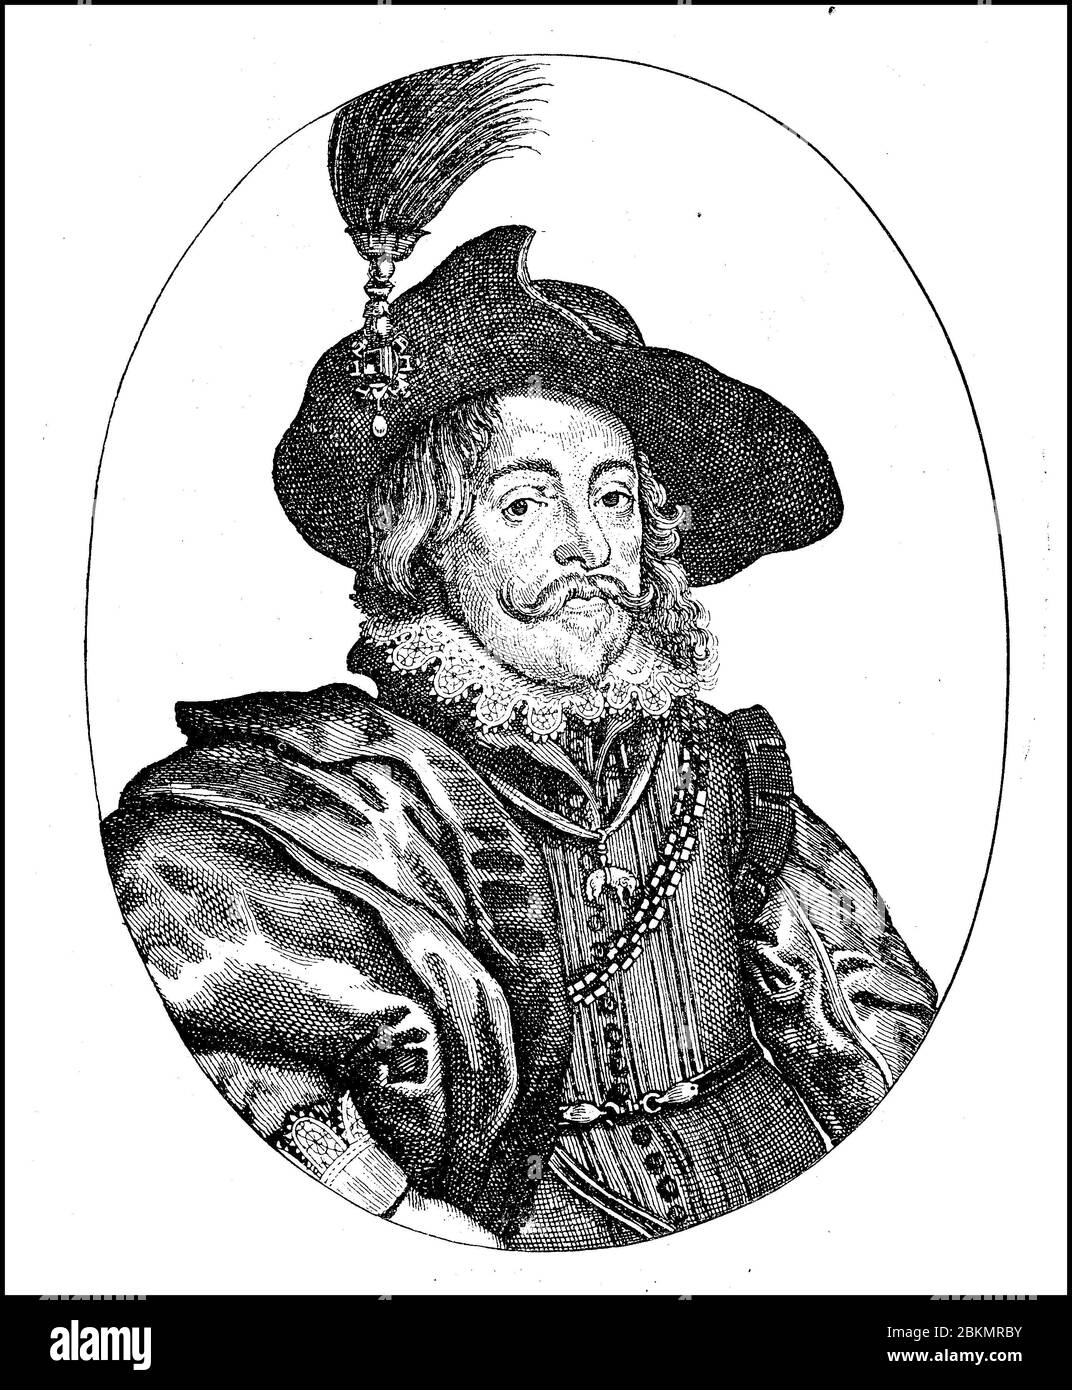 Wladyslaw IV Vasa Wladyslaw IV Waza Vladislav IV Wasa, 9 juin 1595 - 20 mai 1648, a été de 1632, en tant que roi de Pologne et grand-duc de Lituanie, le dirigeant du Commonwealth polonais-lituanien et roi titulaire de Suède. Il fut à partir de 1610 élu tsar de Russie / Wladyslaw IV WASA, Wladyslaw IV Waza, Wladislaw IV AAAC, 9. Juni 1595 - 20. Mai 1648, WAR ab 1632, als gewählter König von Polen und Großfürst von Litauen, der Herrscher des Staates Polen-Litauen, Titulamarkönig von Schweden. Er war ab 1610 erwählter ZAR von Russland, Historisch, historique, numérique amélioré repr Banque D'Images